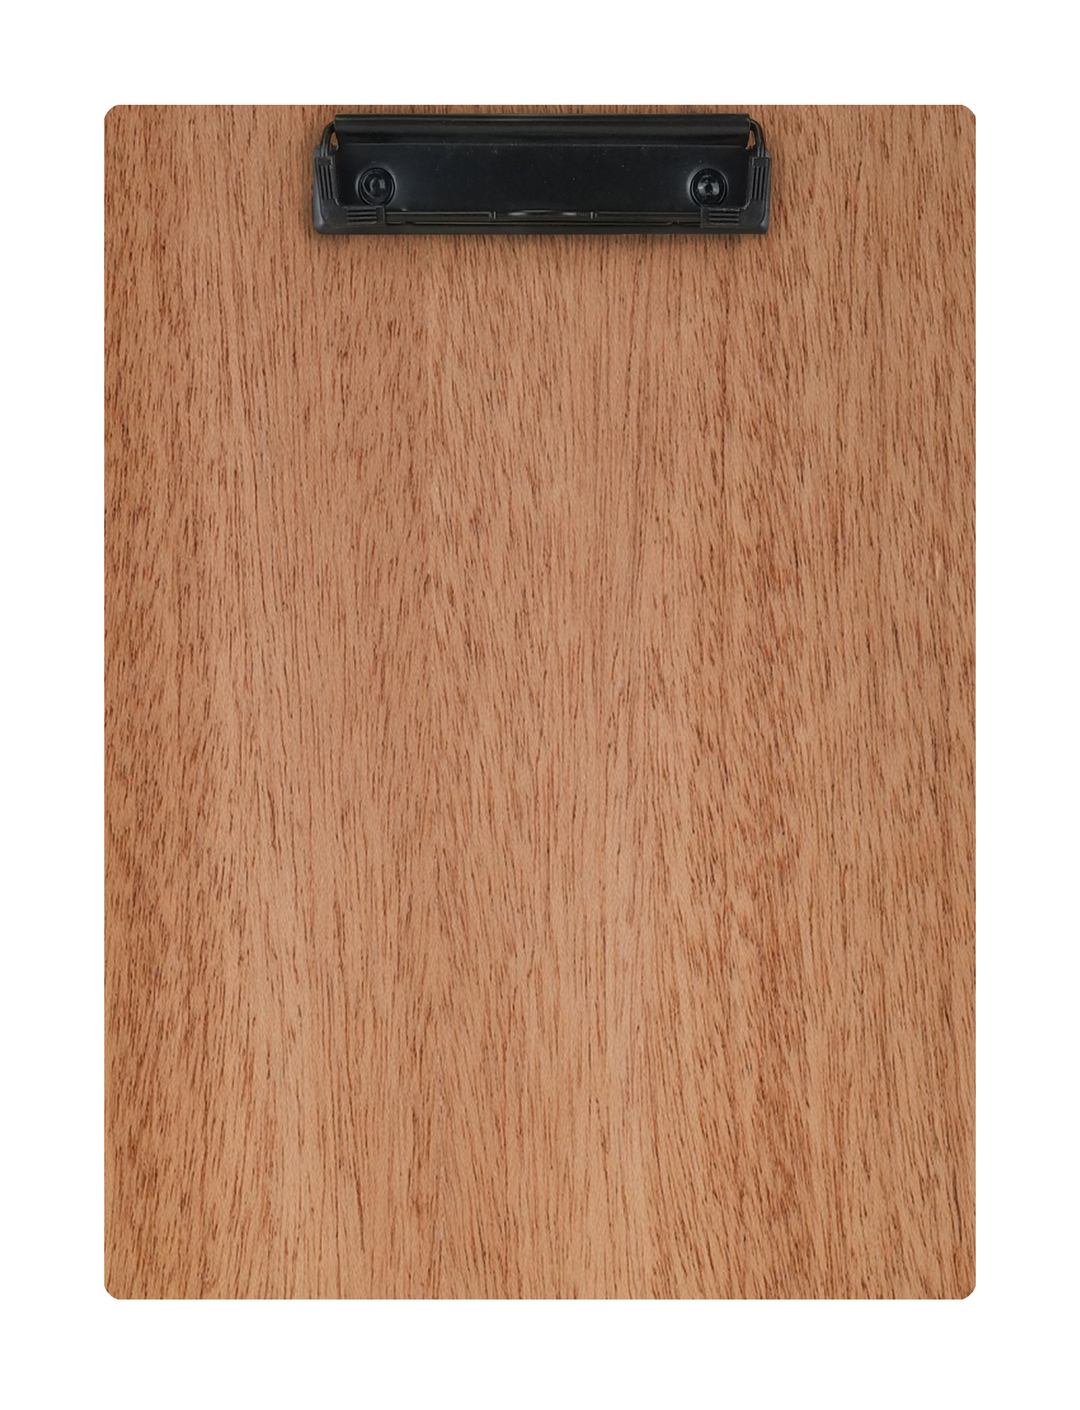 Wood Clipboard